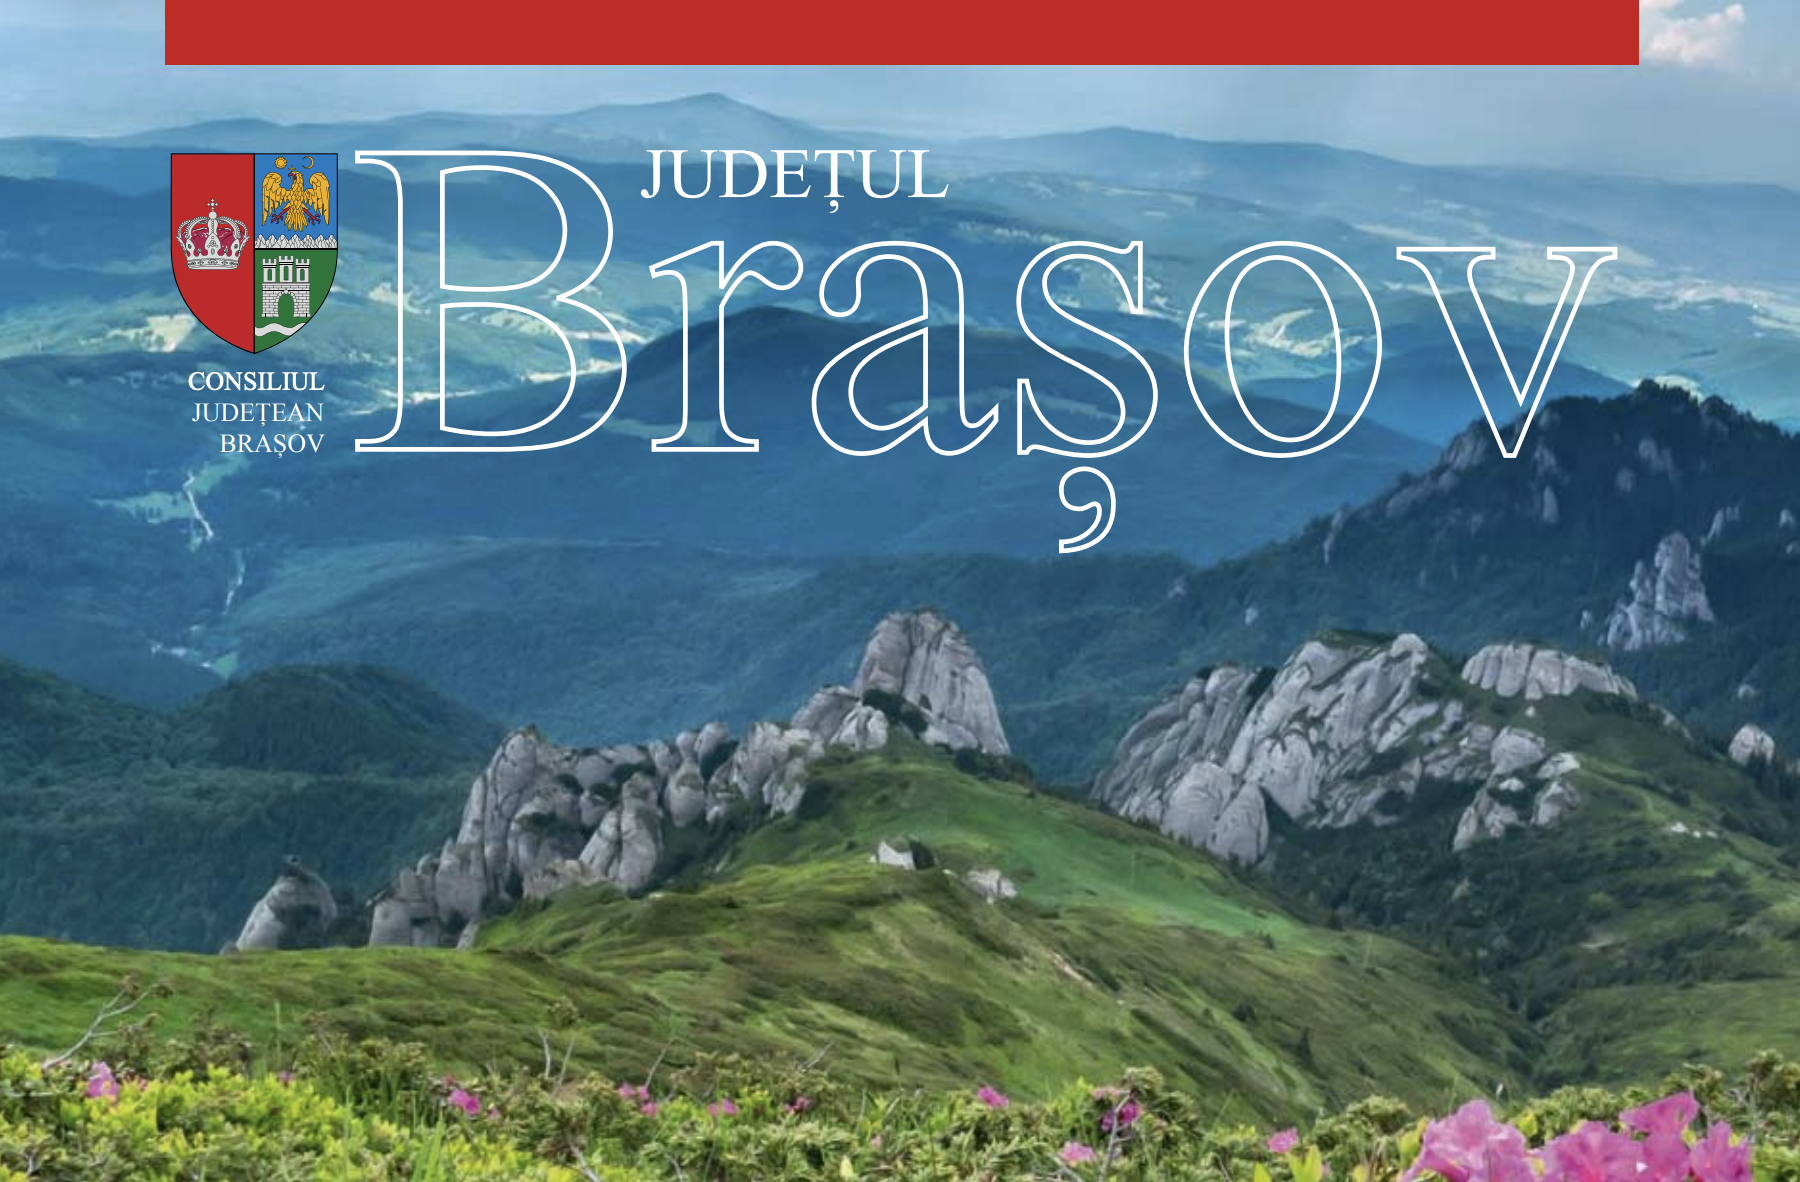 Brochures about Brașov County